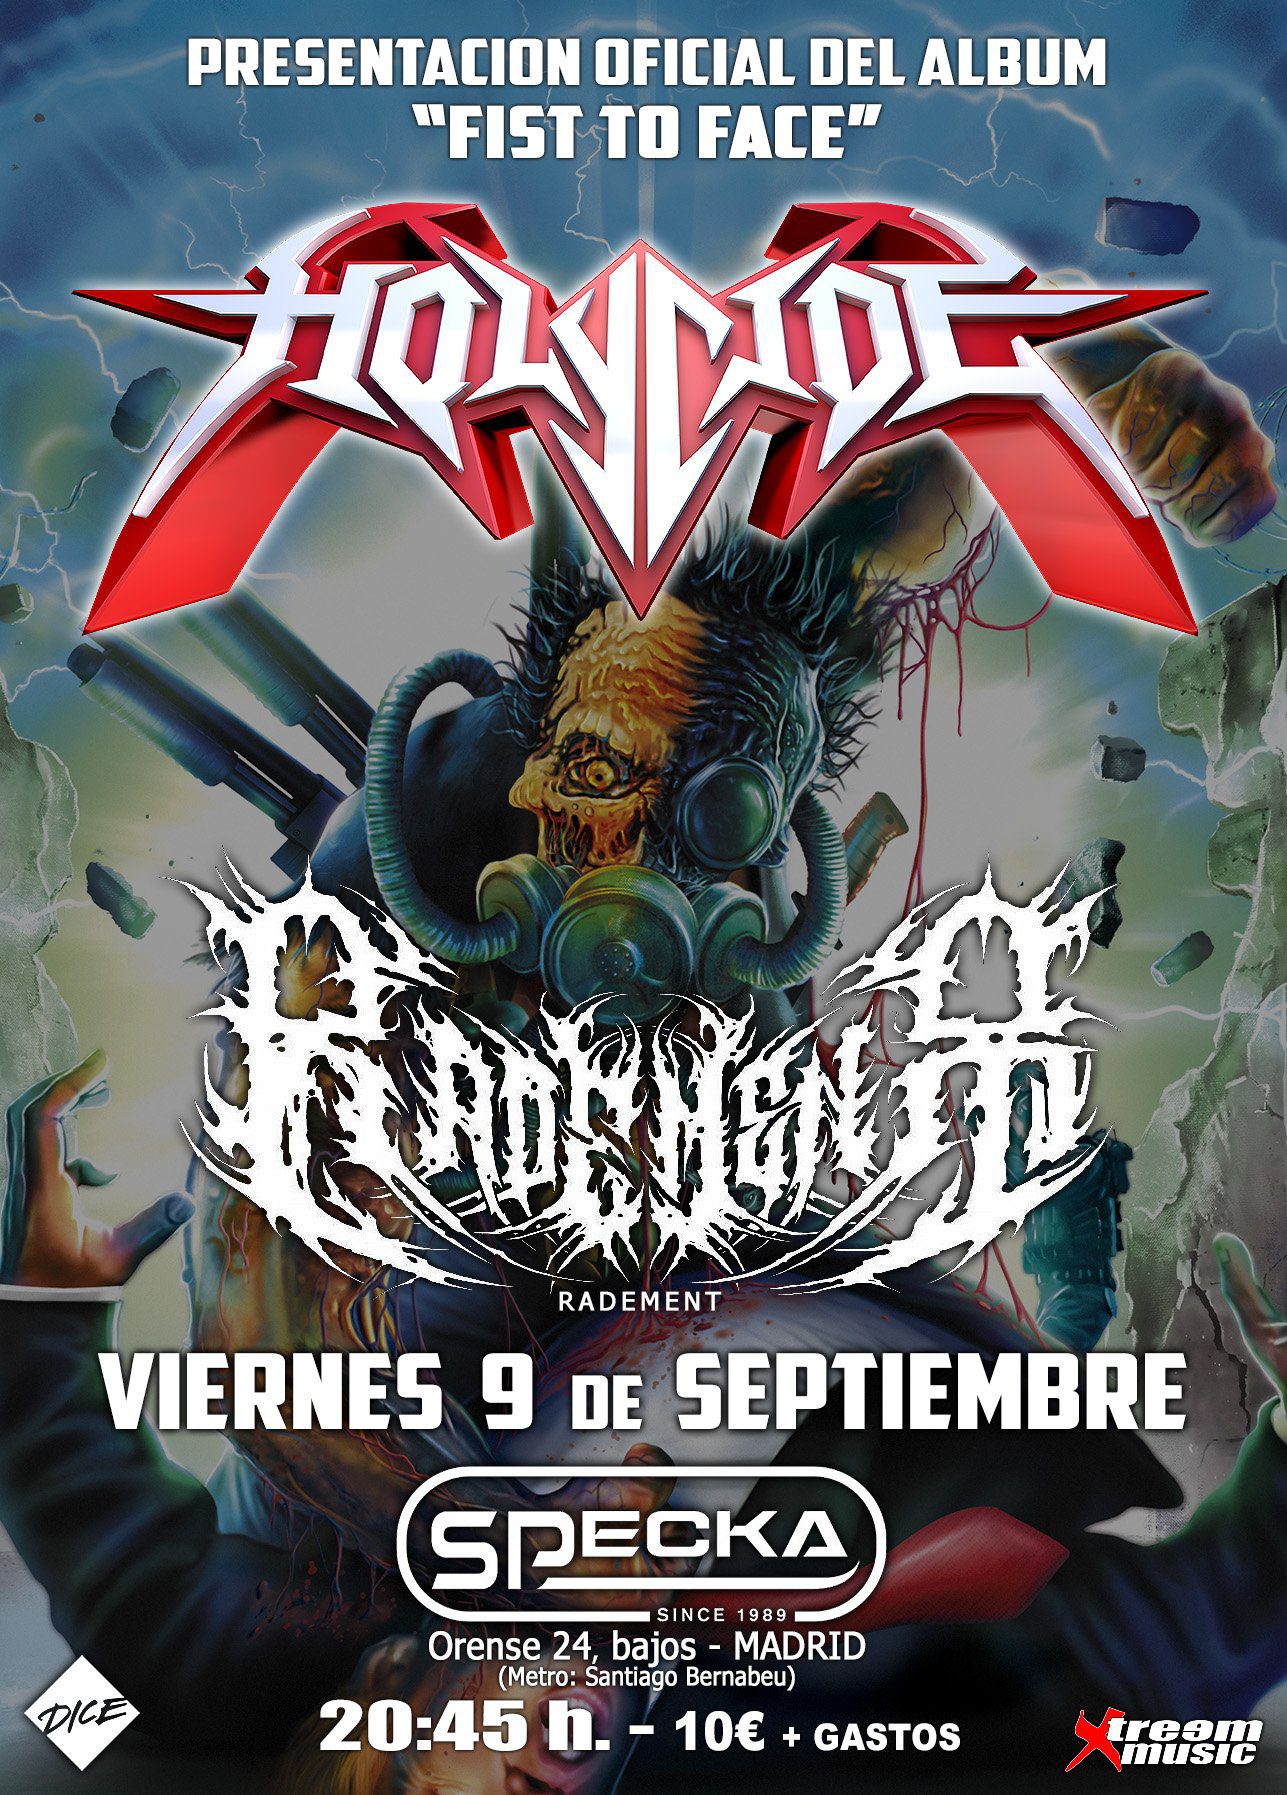 Concierto de Holycide en Madrid en septiembre